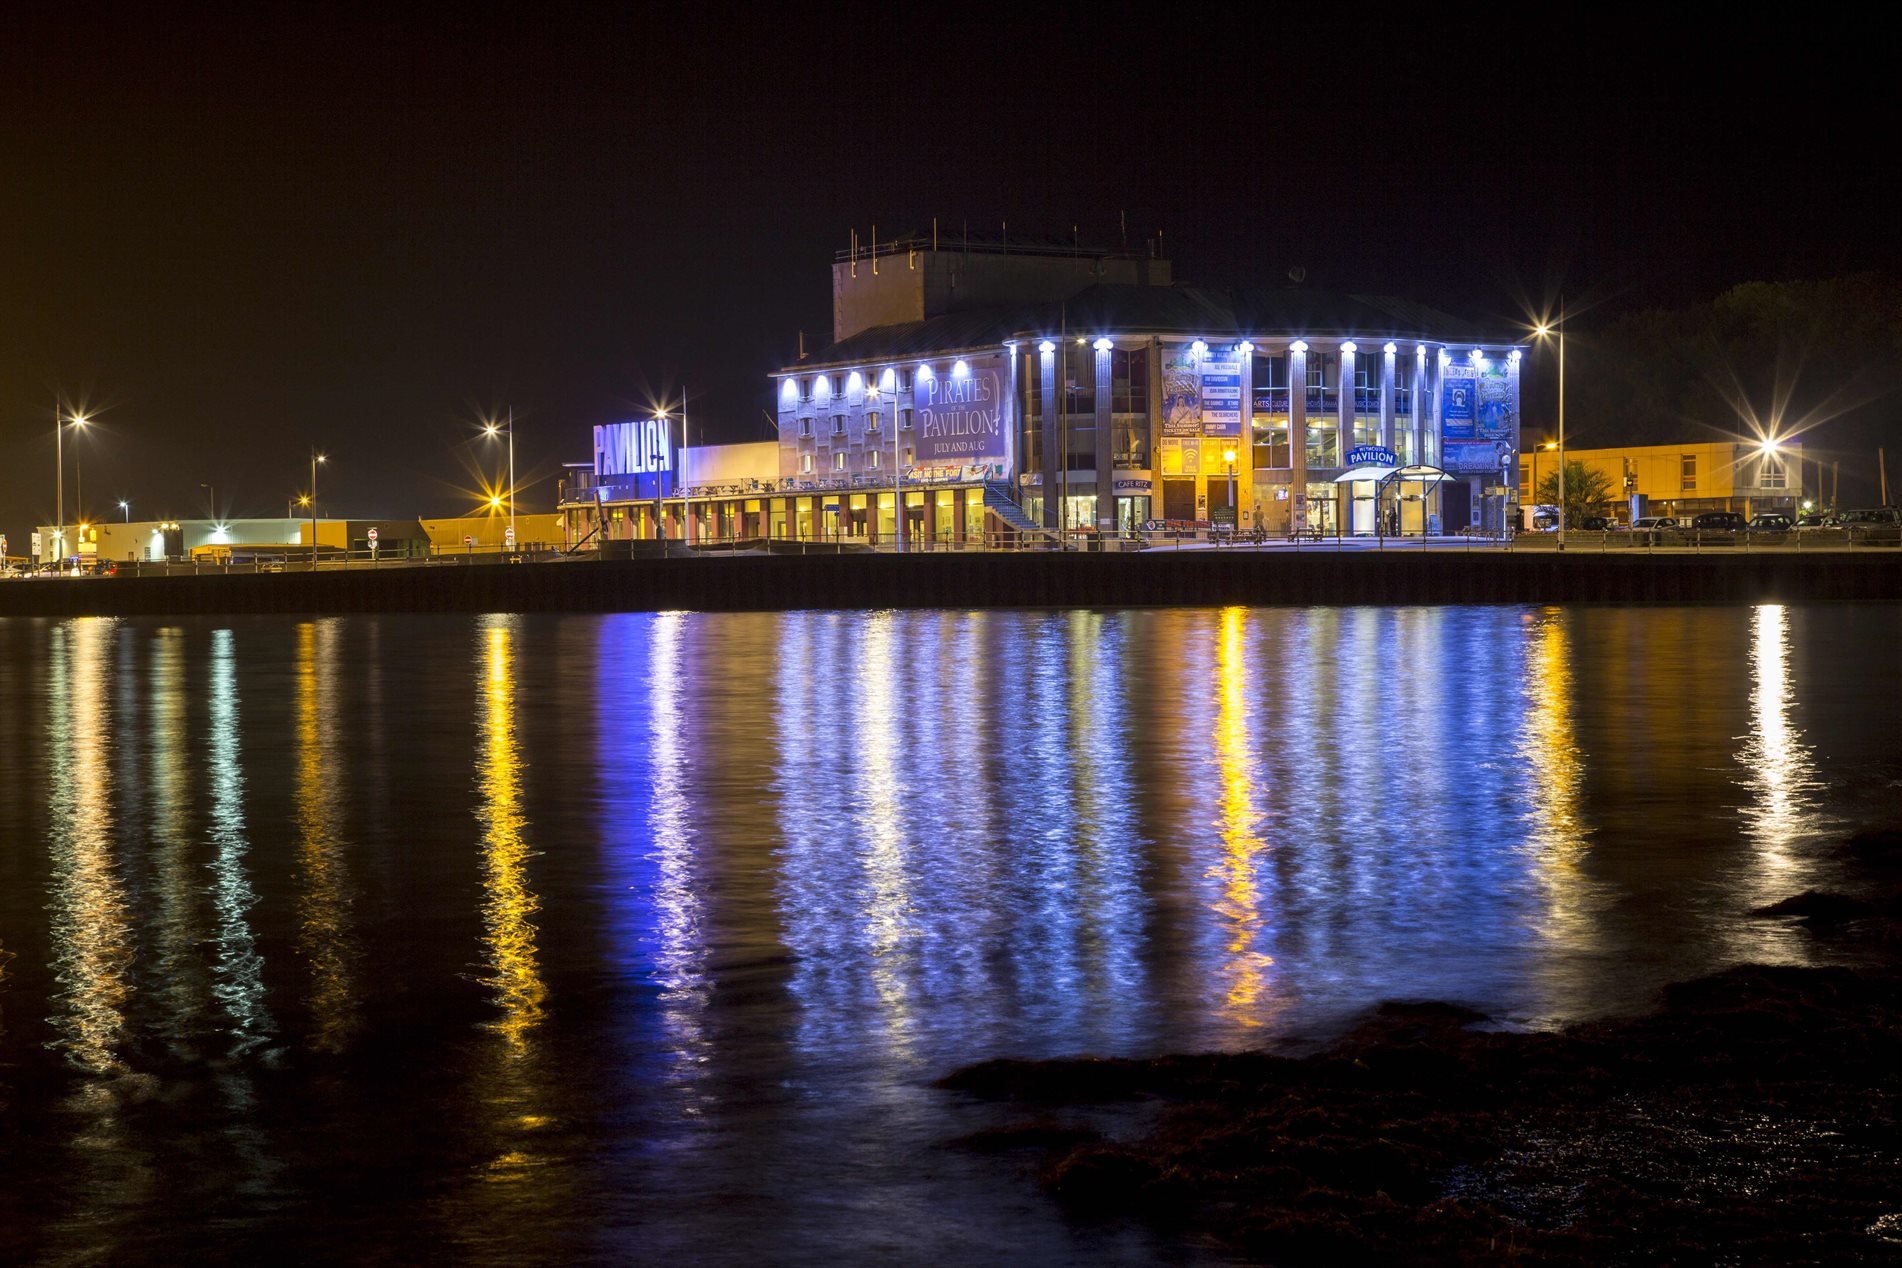 Weymouth Pavilion at night